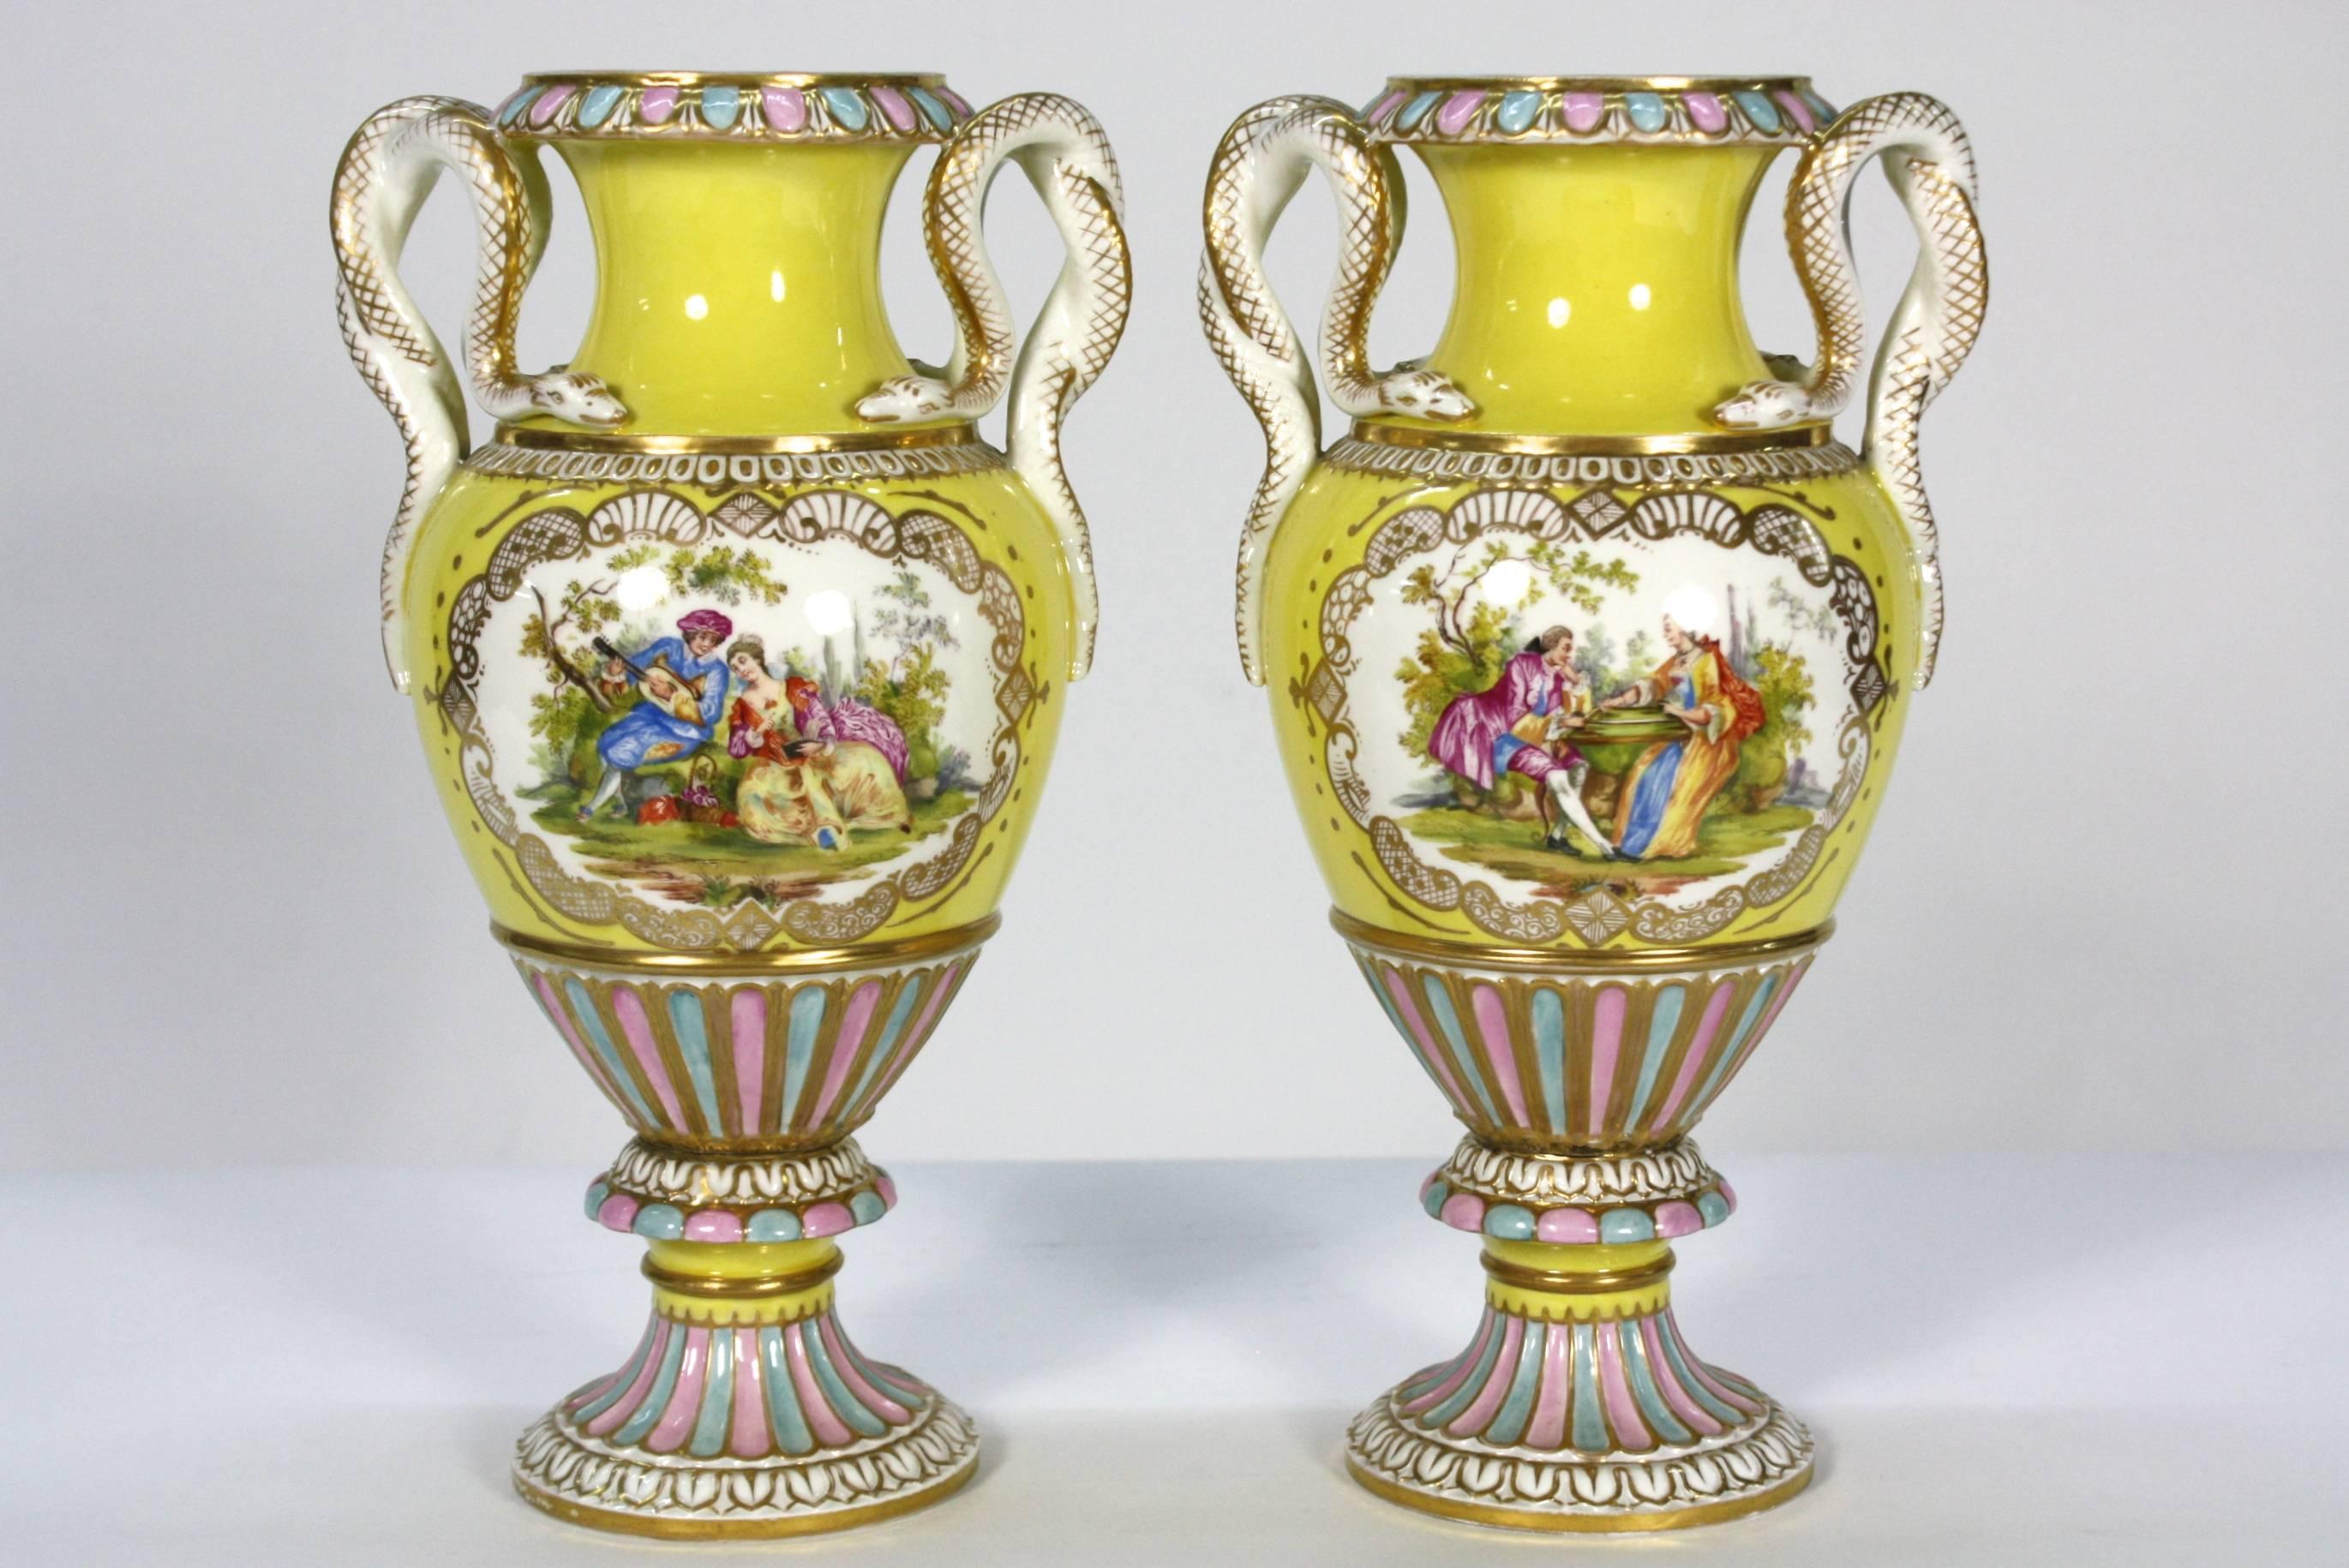 Paire de vases en porcelaine jaune très décoratifs, peints à la main d'une scène romantique centrale détaillée et dotés d'anses en forme de serpent (Meissen, XIXe siècle).